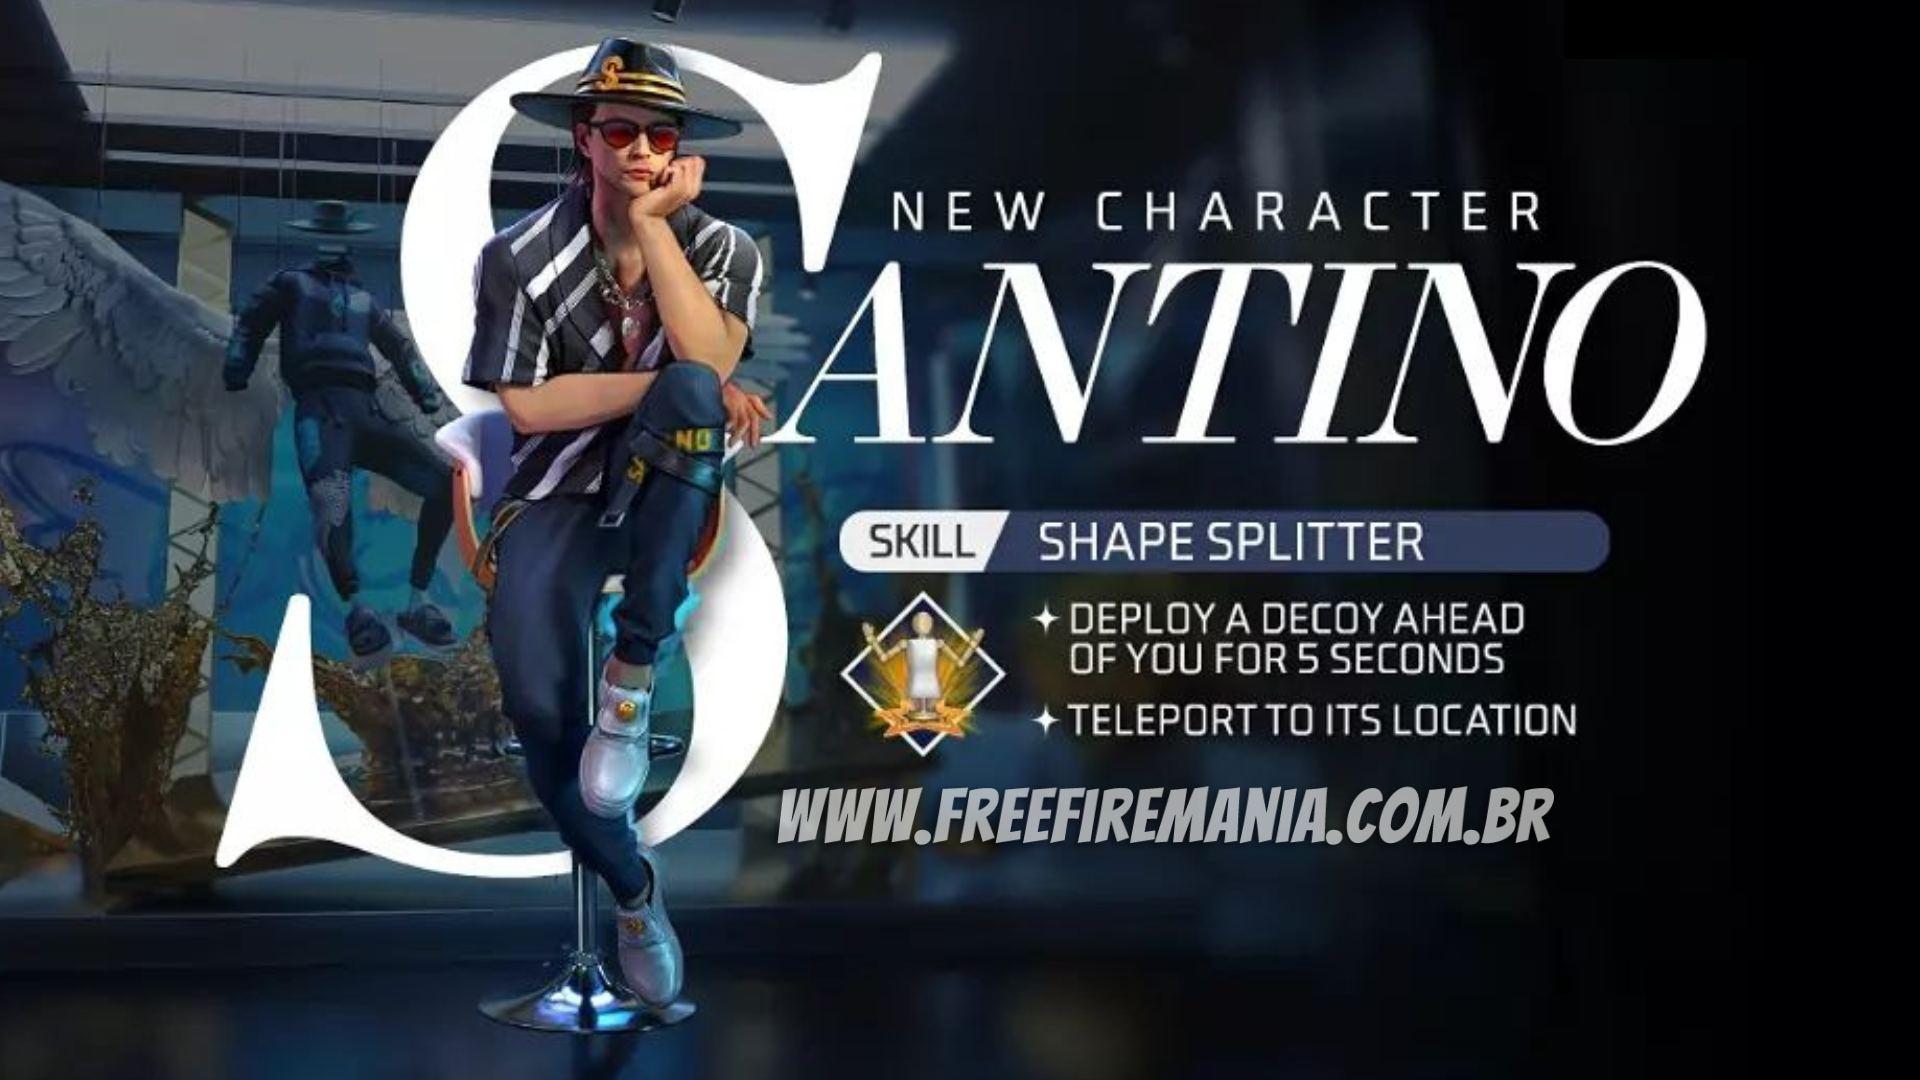 Santino Free Fire: habilidade, dicas e ficha técnica do personagem